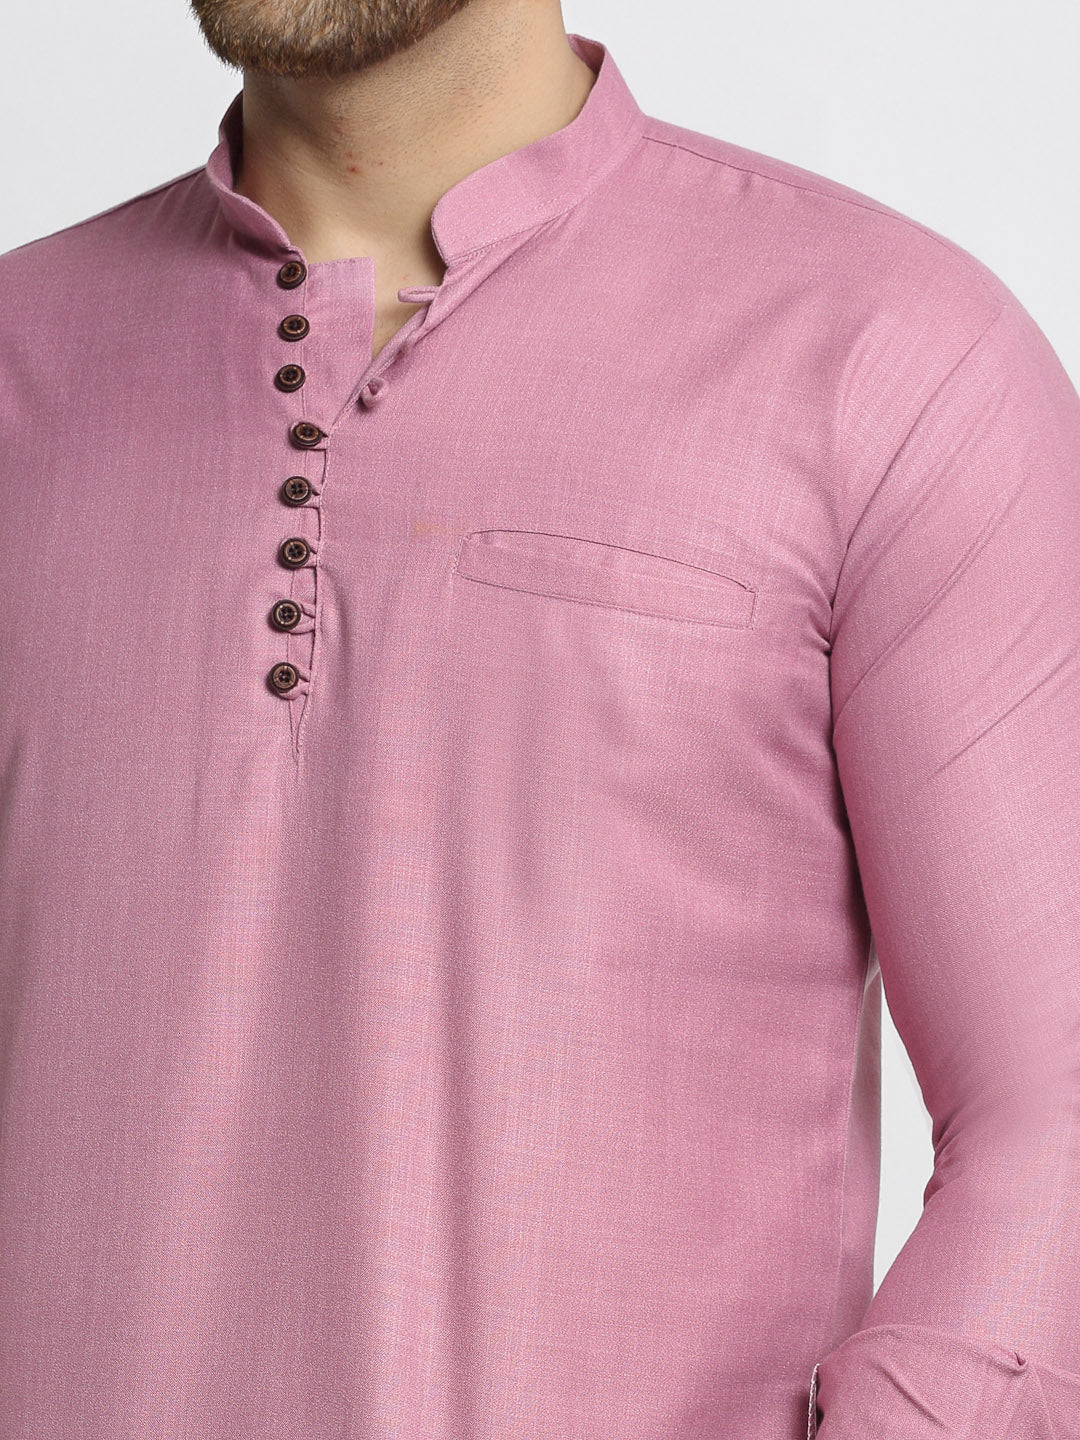 Jompers Men's Magenta Pink Solid Cotton Short Kurta